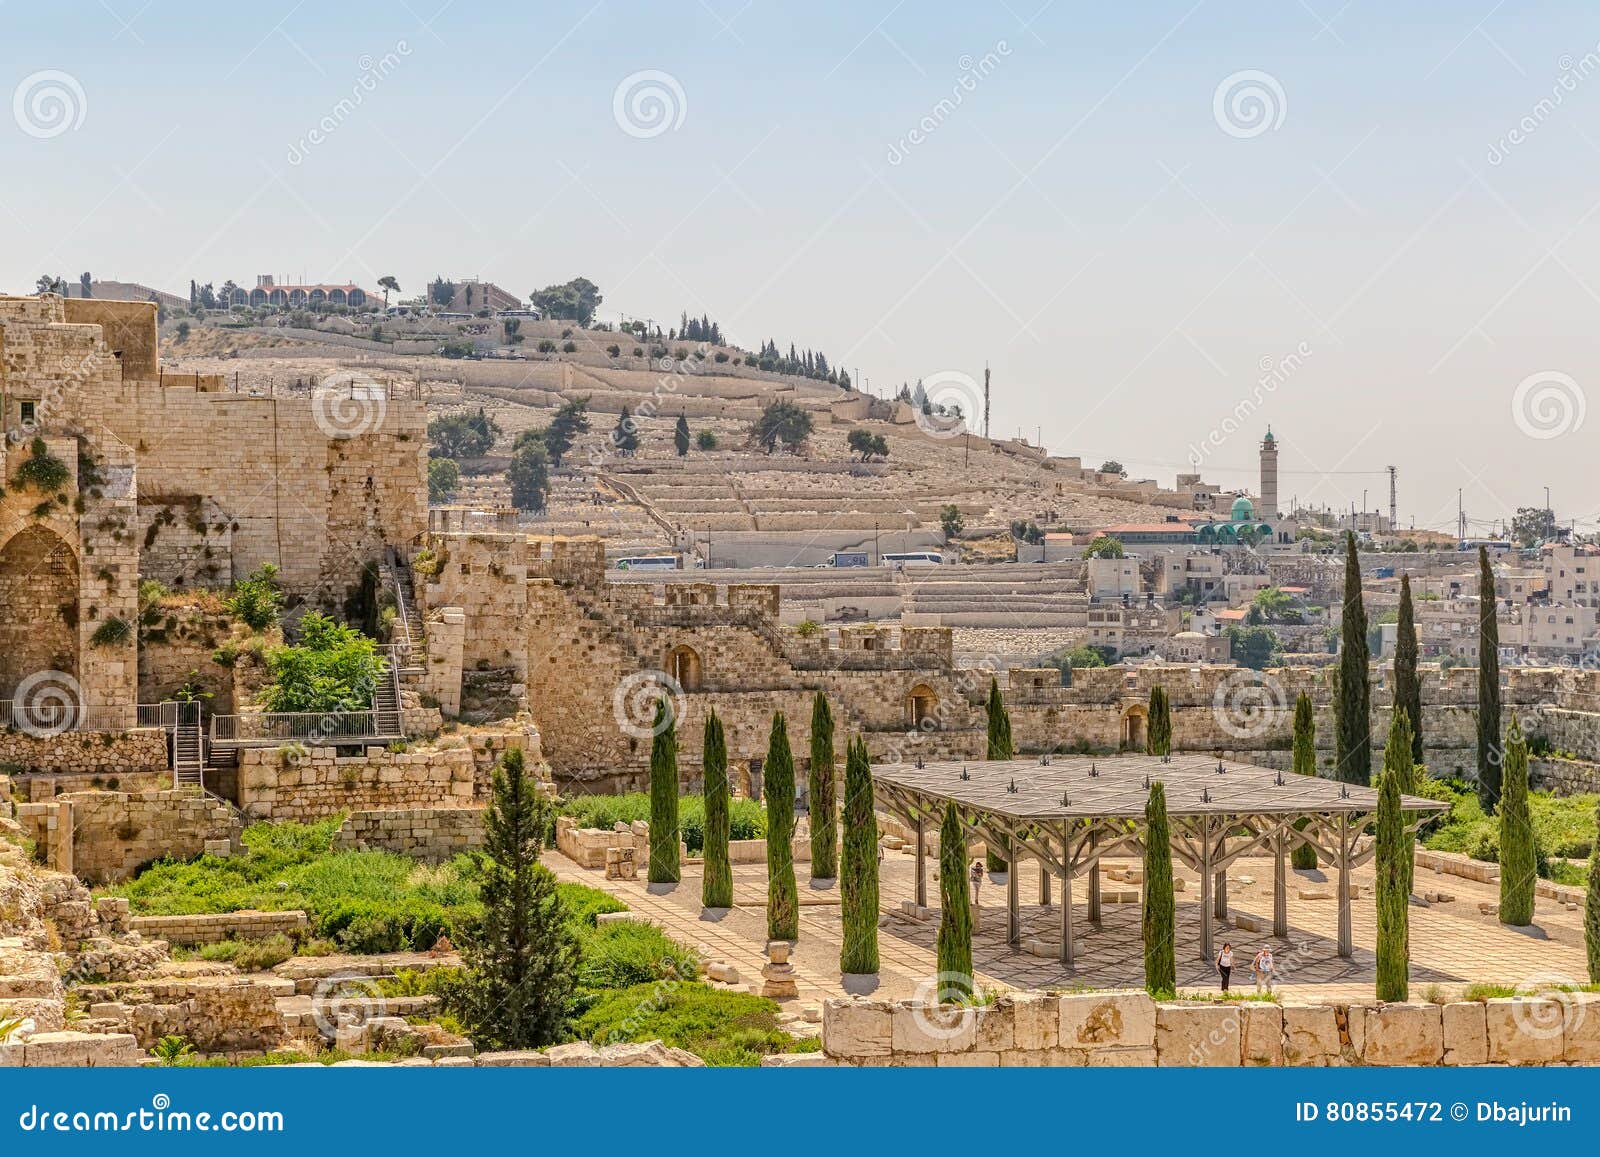 solomon`s temple remains jerusalem